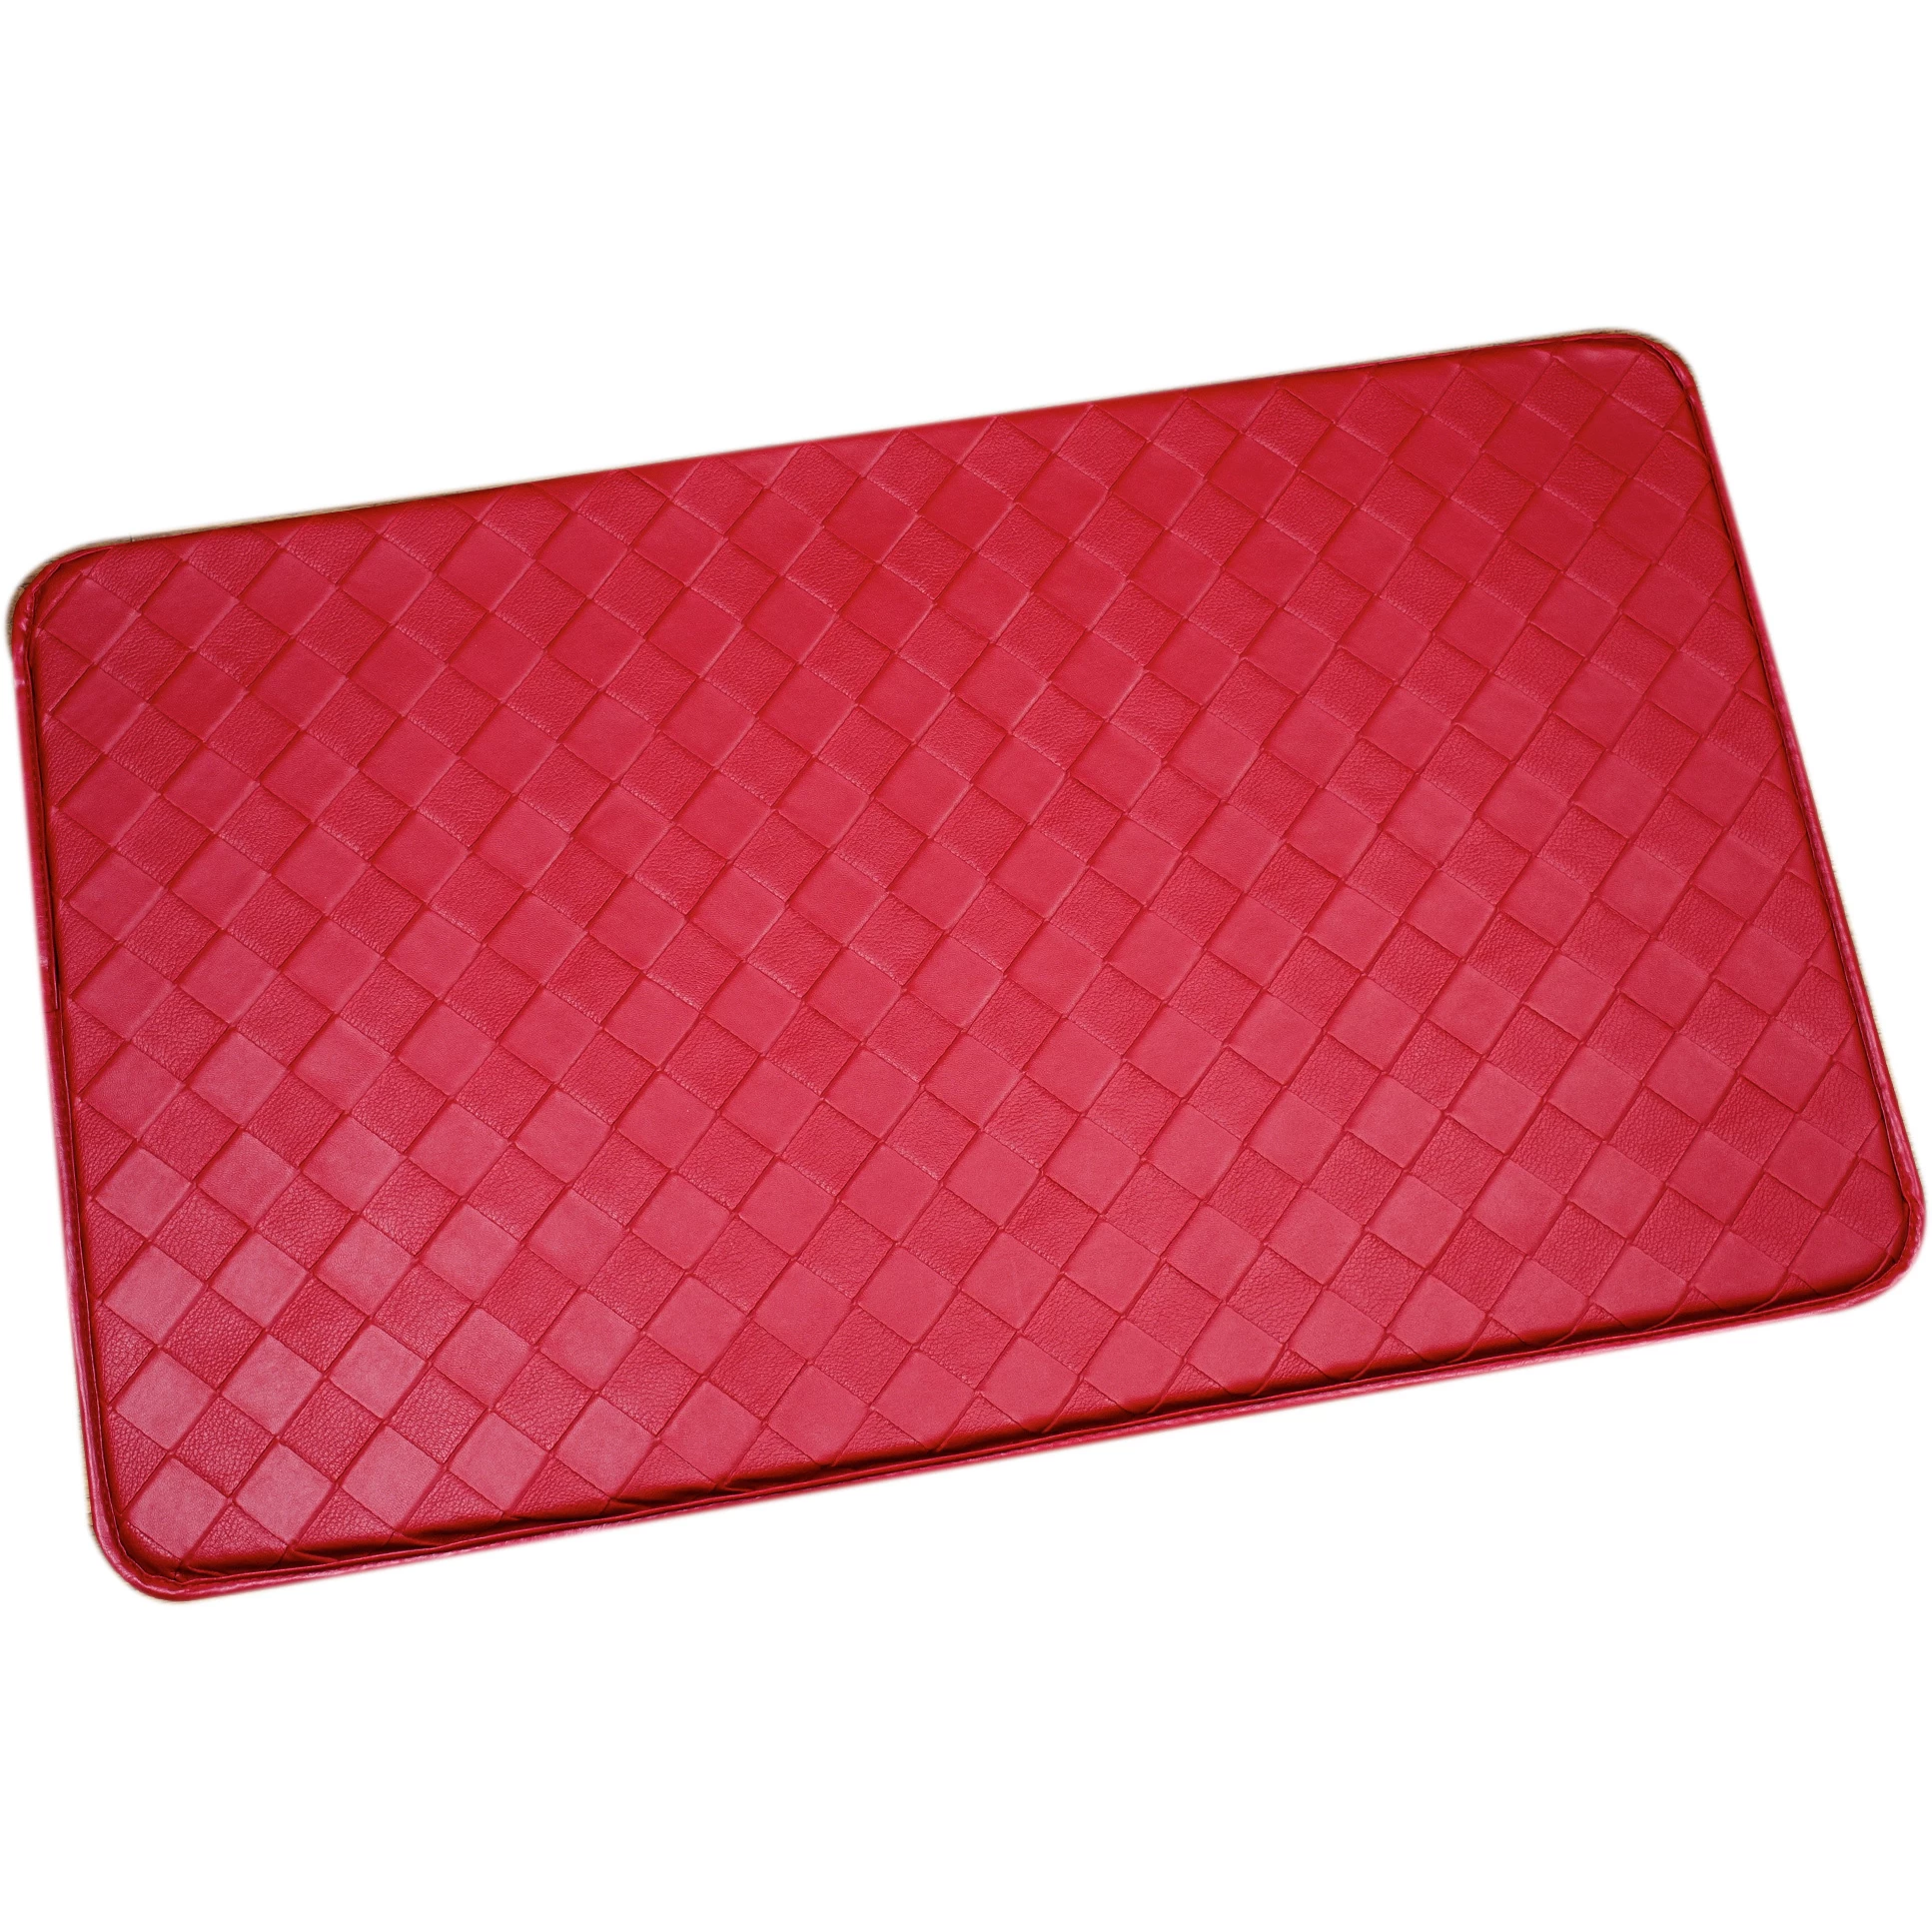 New design PU rugs online, exercise mat, floor mat, gymnastic mats, shower mats